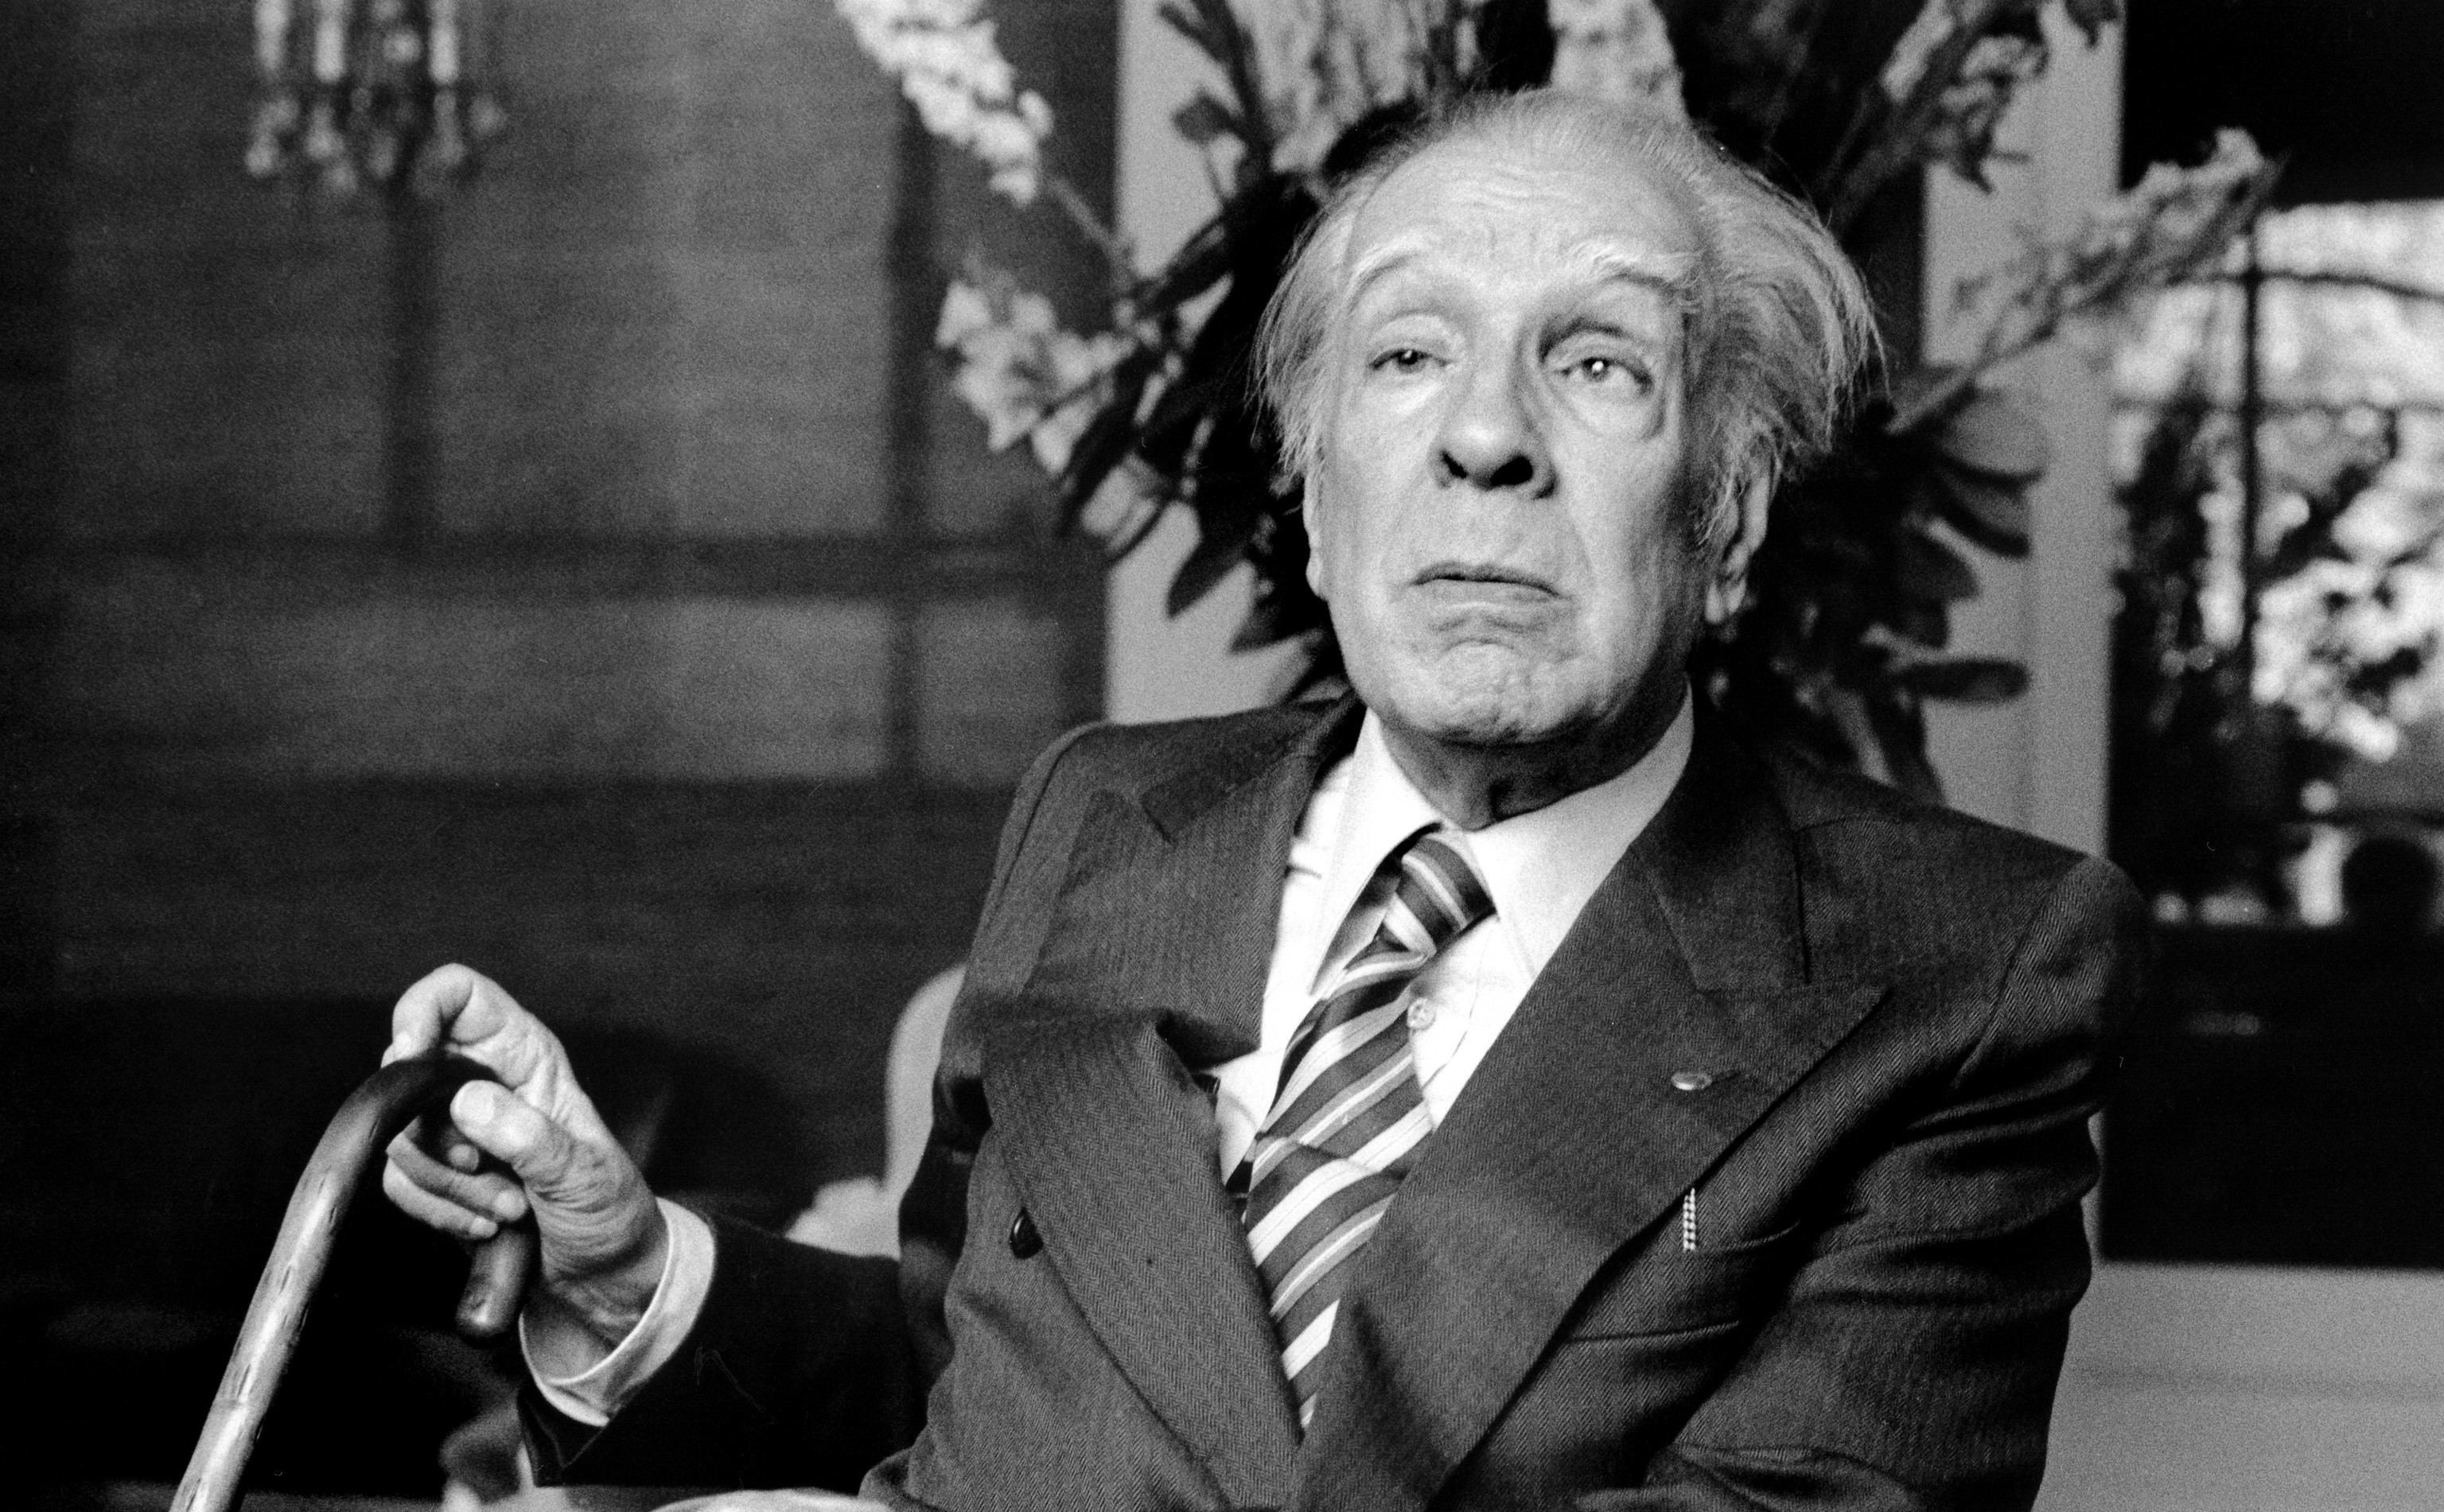 “Gesù Cristo fu un suicida. E io vorrei essere dimenticato”: le confessioni inedite di Jorge Luis Borges